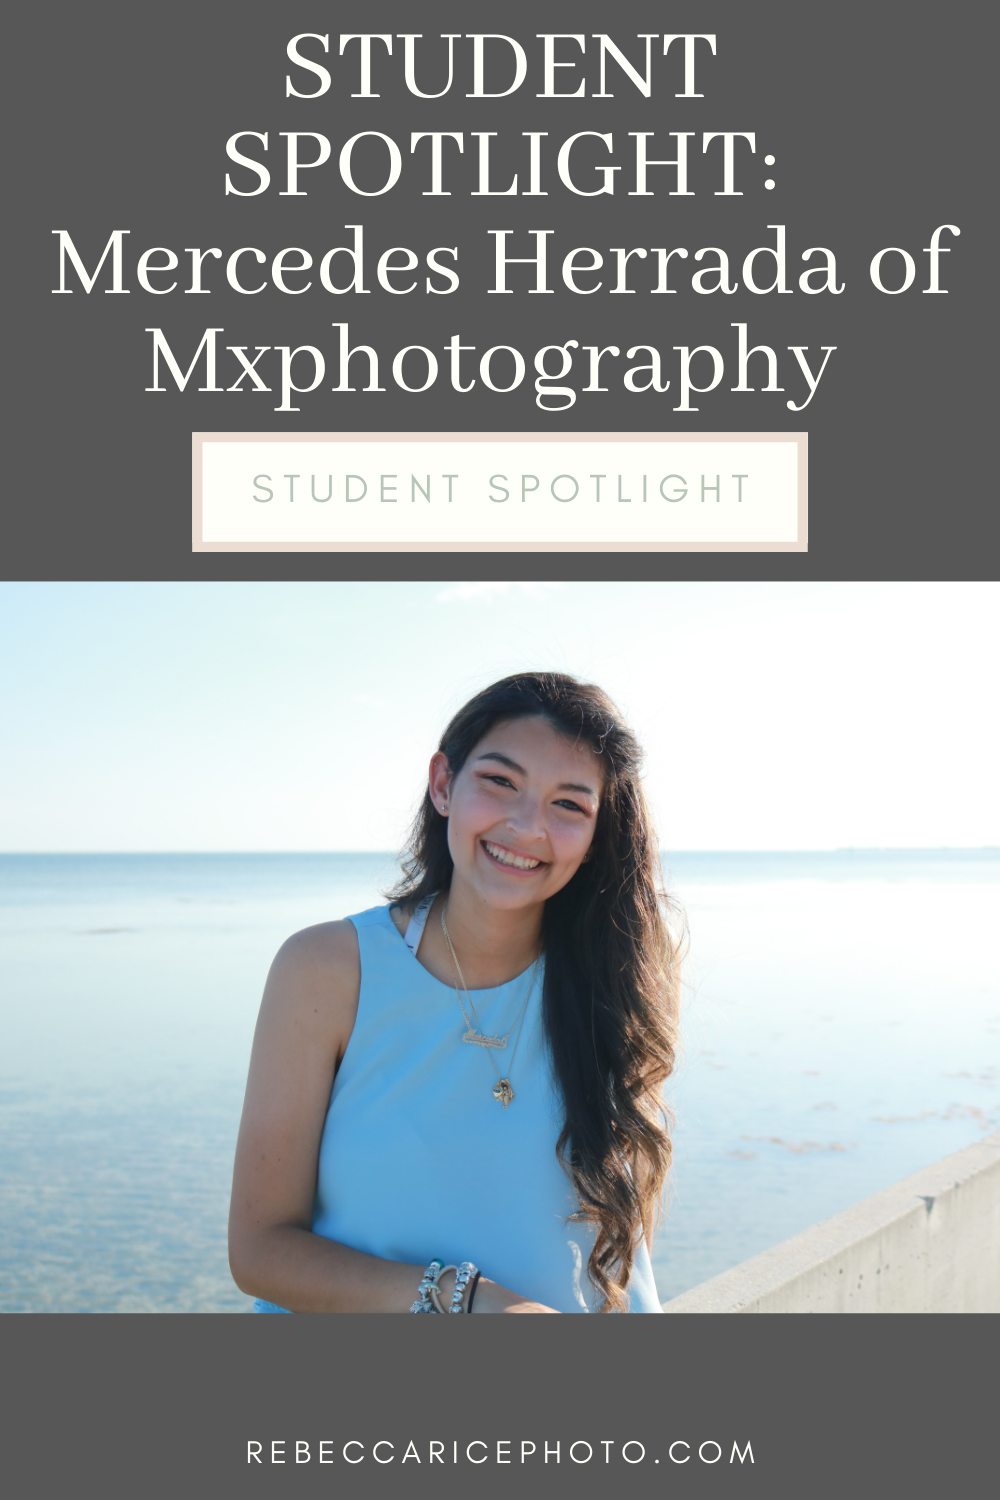 student spotlight for Mercedes Herrada of Mxphotography